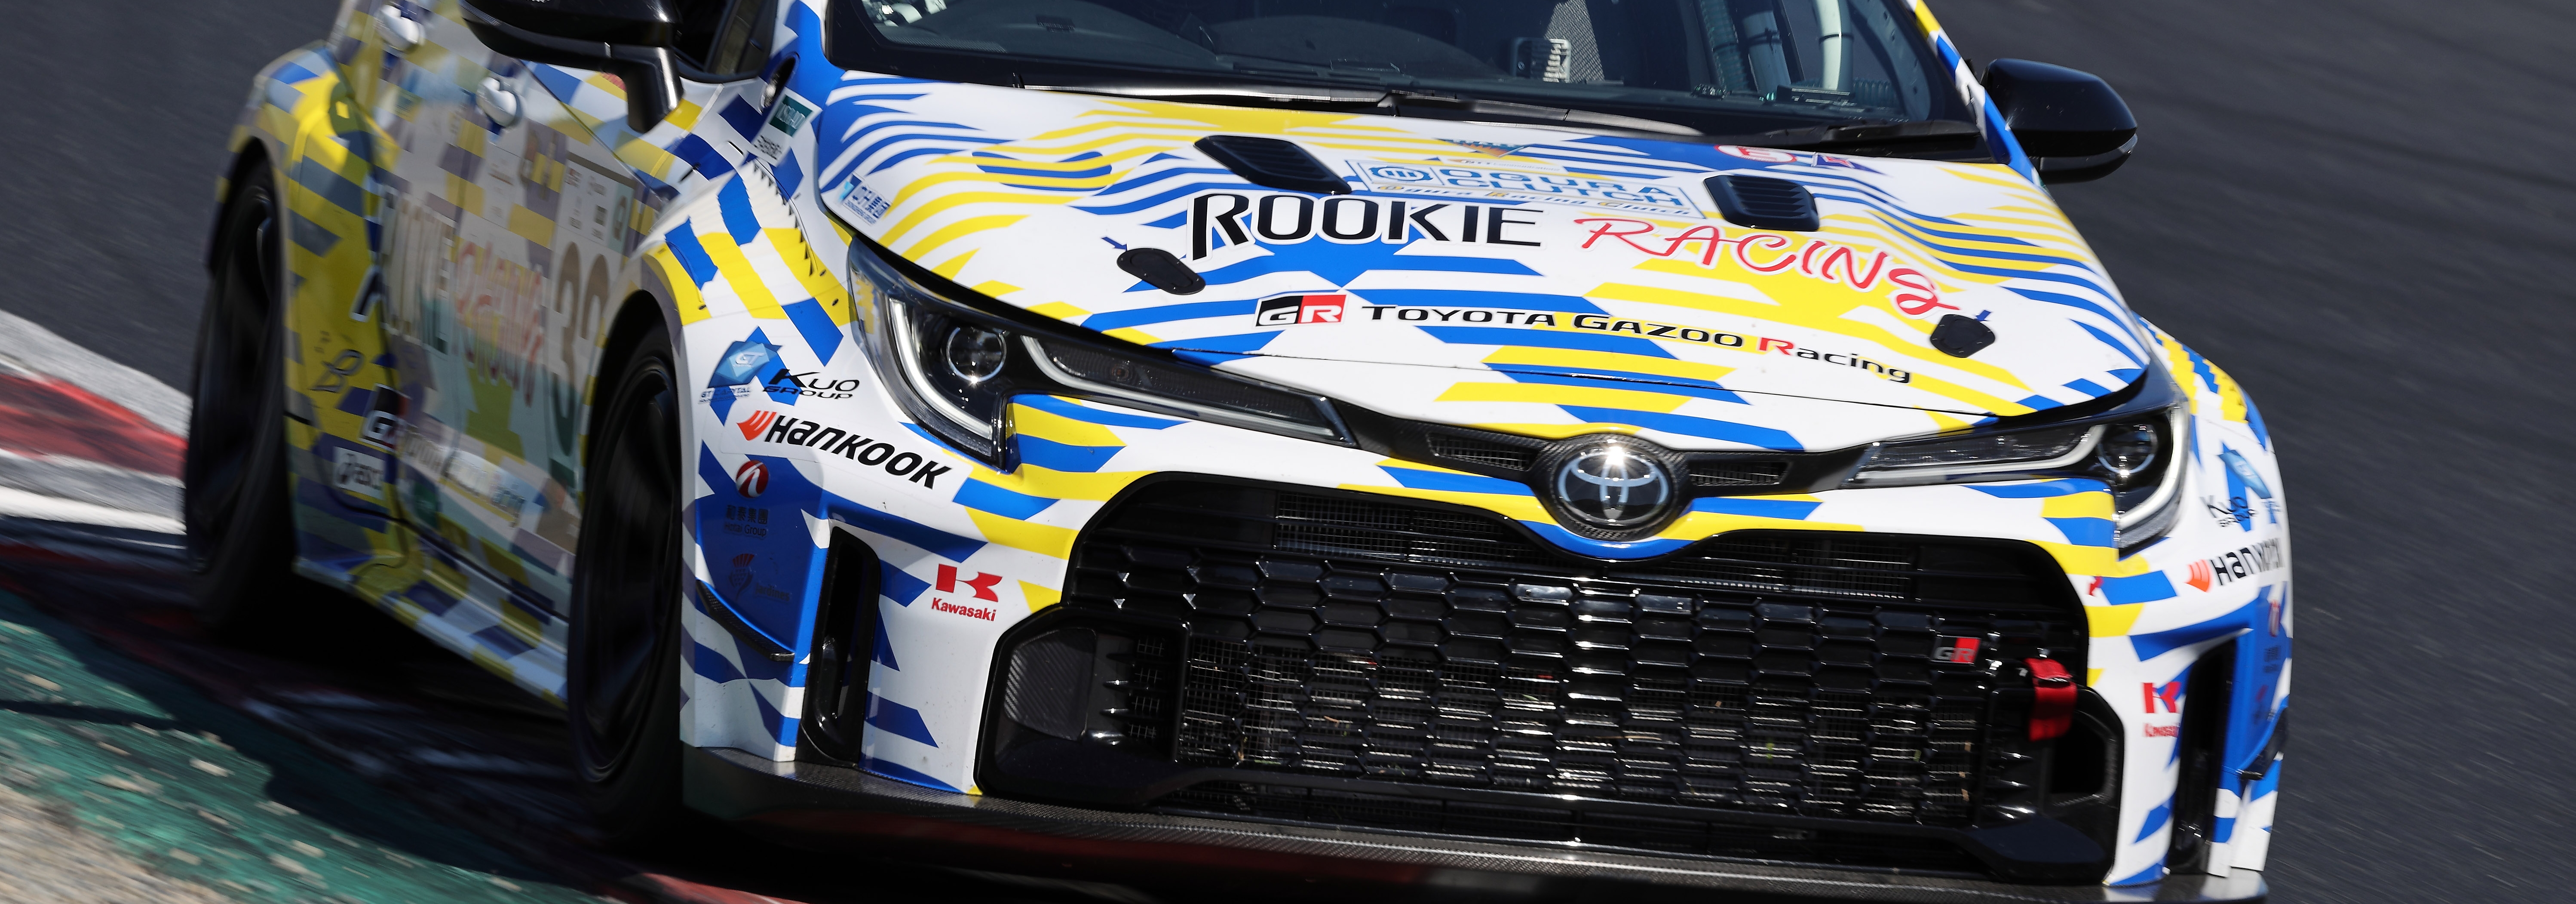 ROOKIE Racing dan TOYOTA Motor Corporation mengumumkan partisipasi di balapan ketahanan 25 jam di Thailand